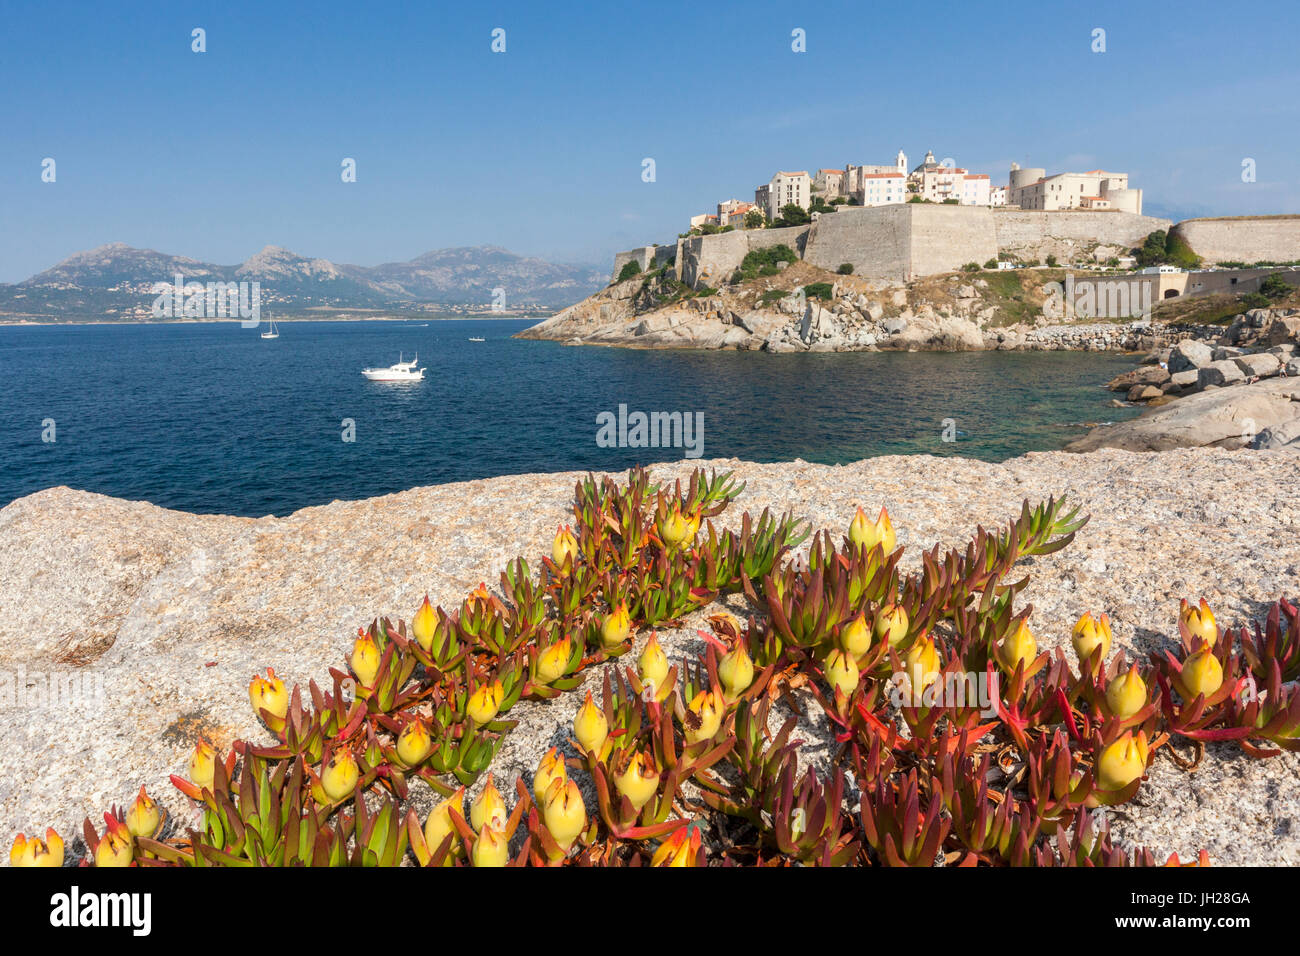 Des fleurs sur le châssis des roches citadelle fortifiée entourée par la mer, Calvi, Balagne, Corse, France, Méditerranée Banque D'Images